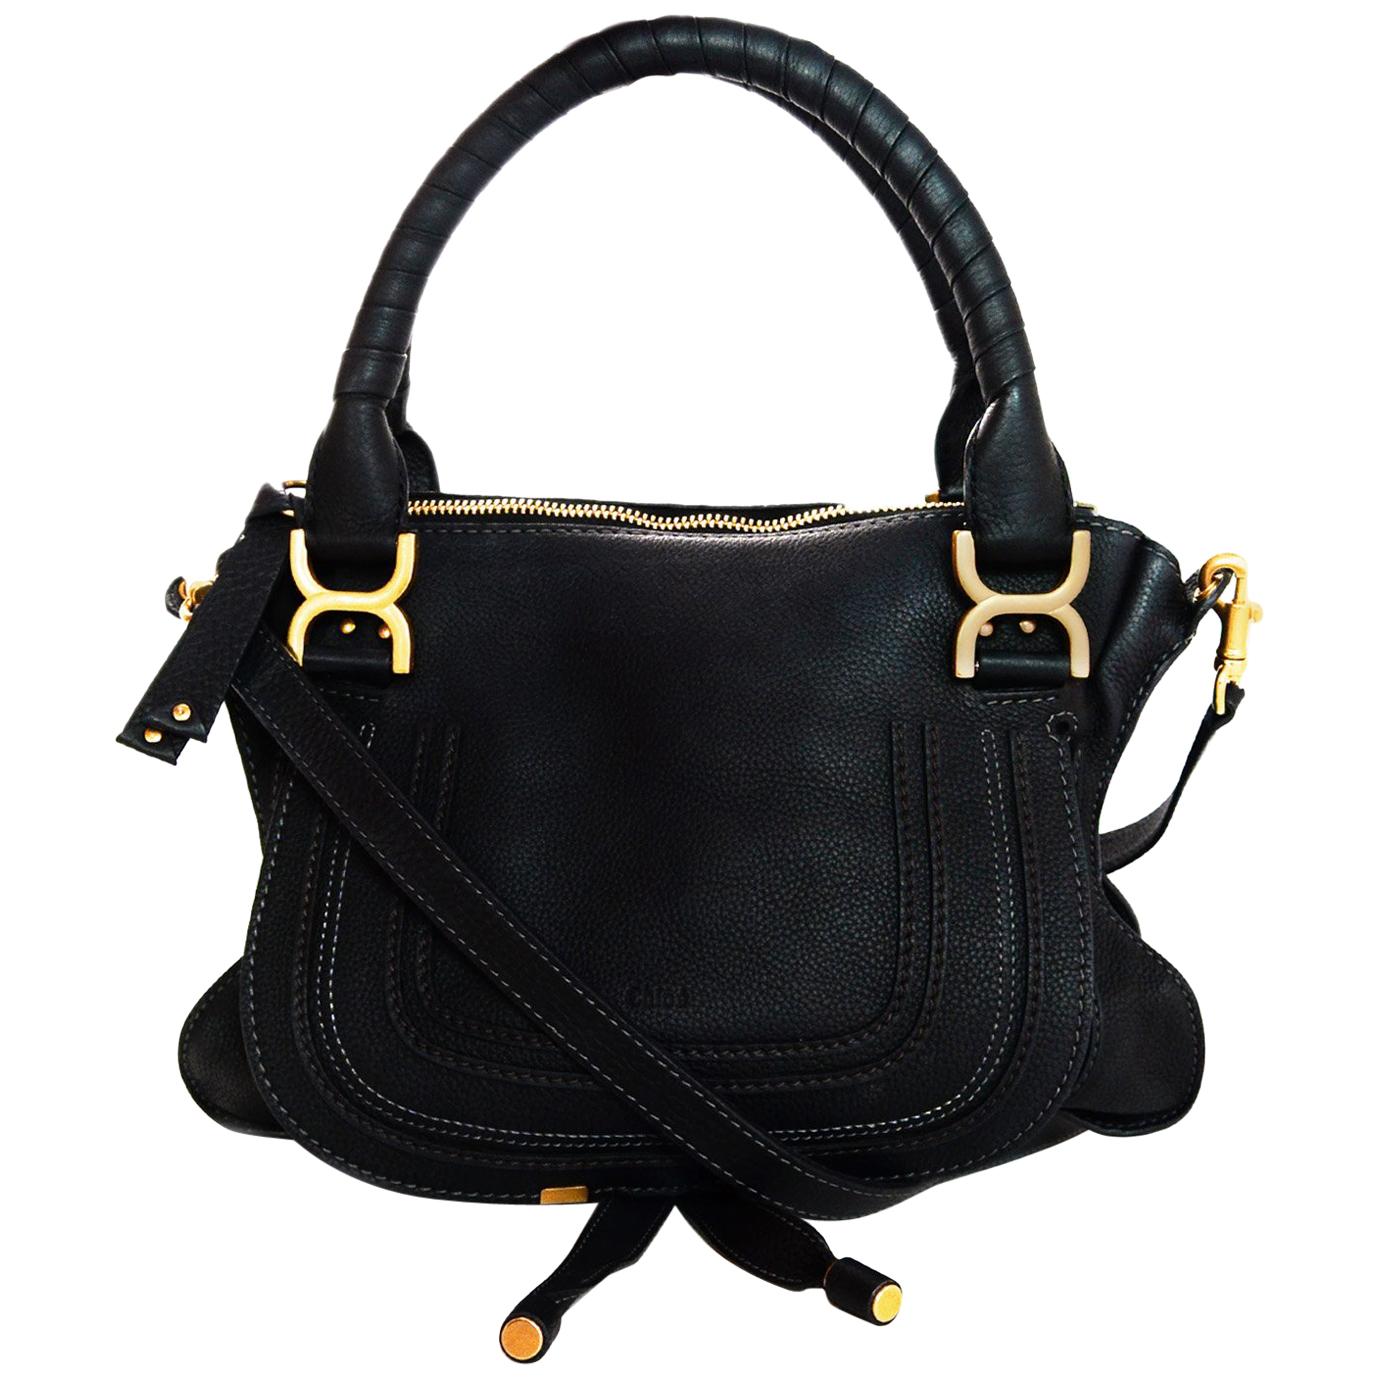 Chloe Black Leather Medium Marcie Satchel Bag W/ Crossbody Strap